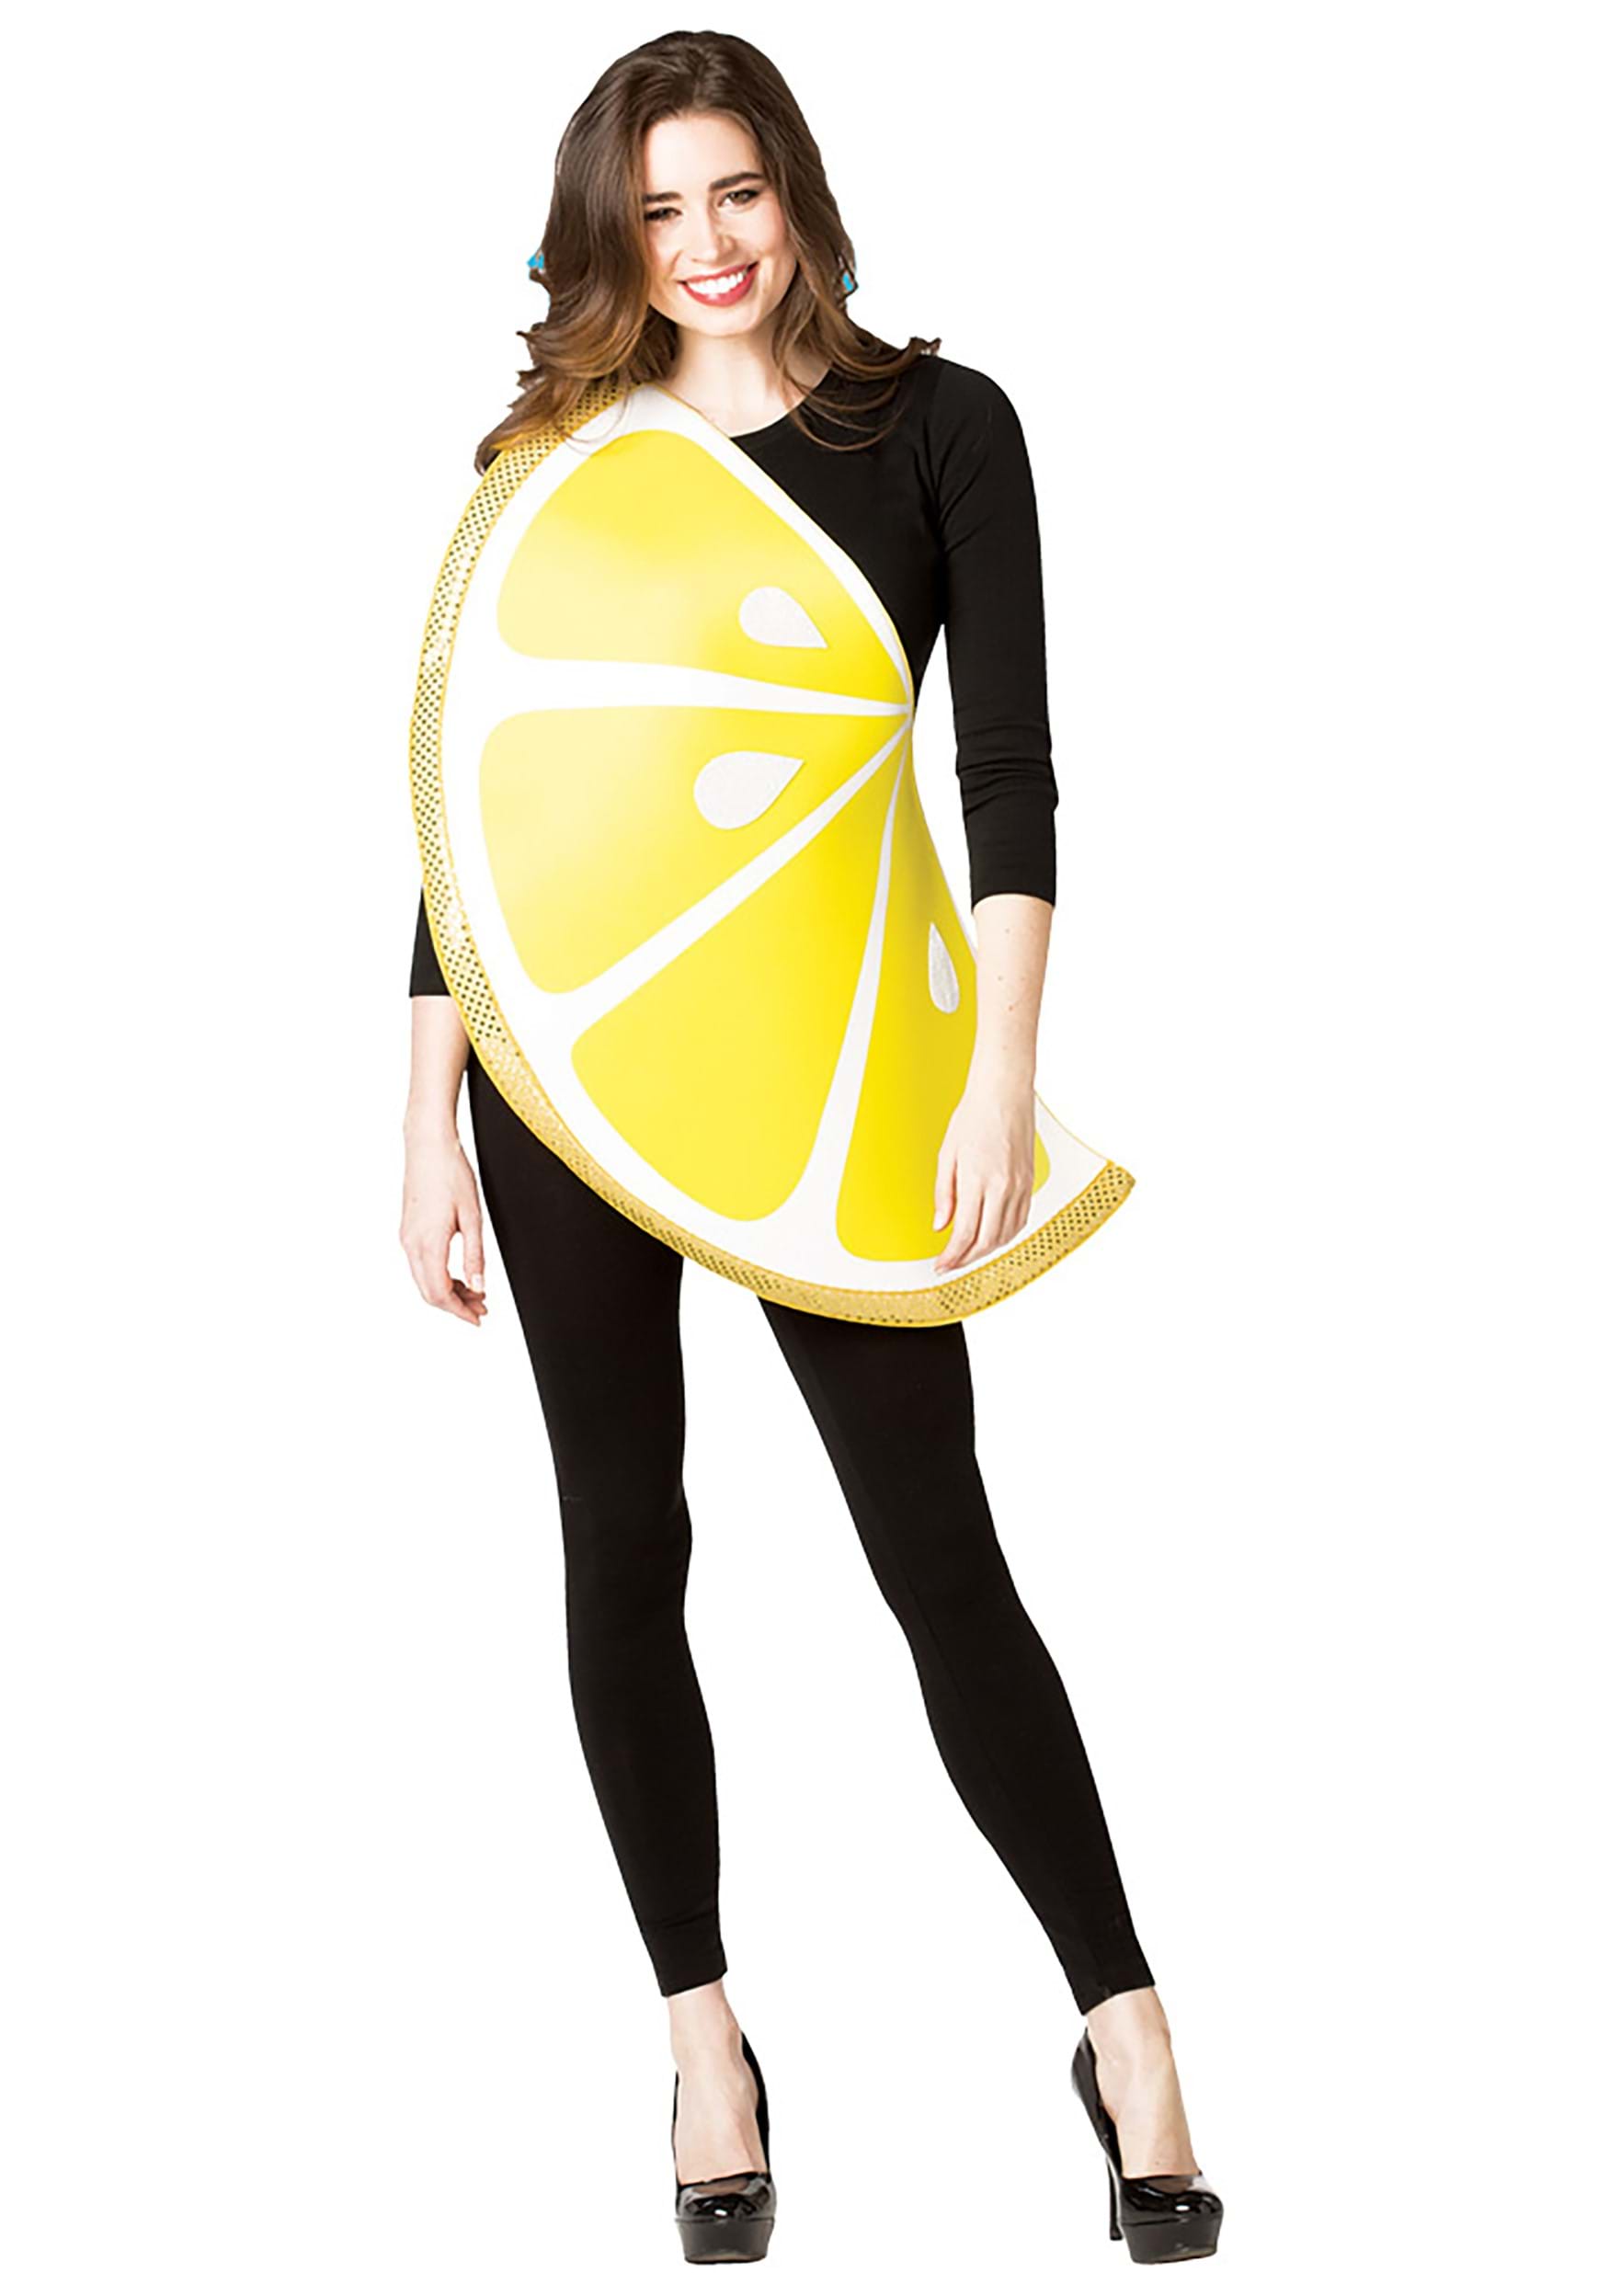 Disfraz de portaobjetos de limón para adultos Multicolor